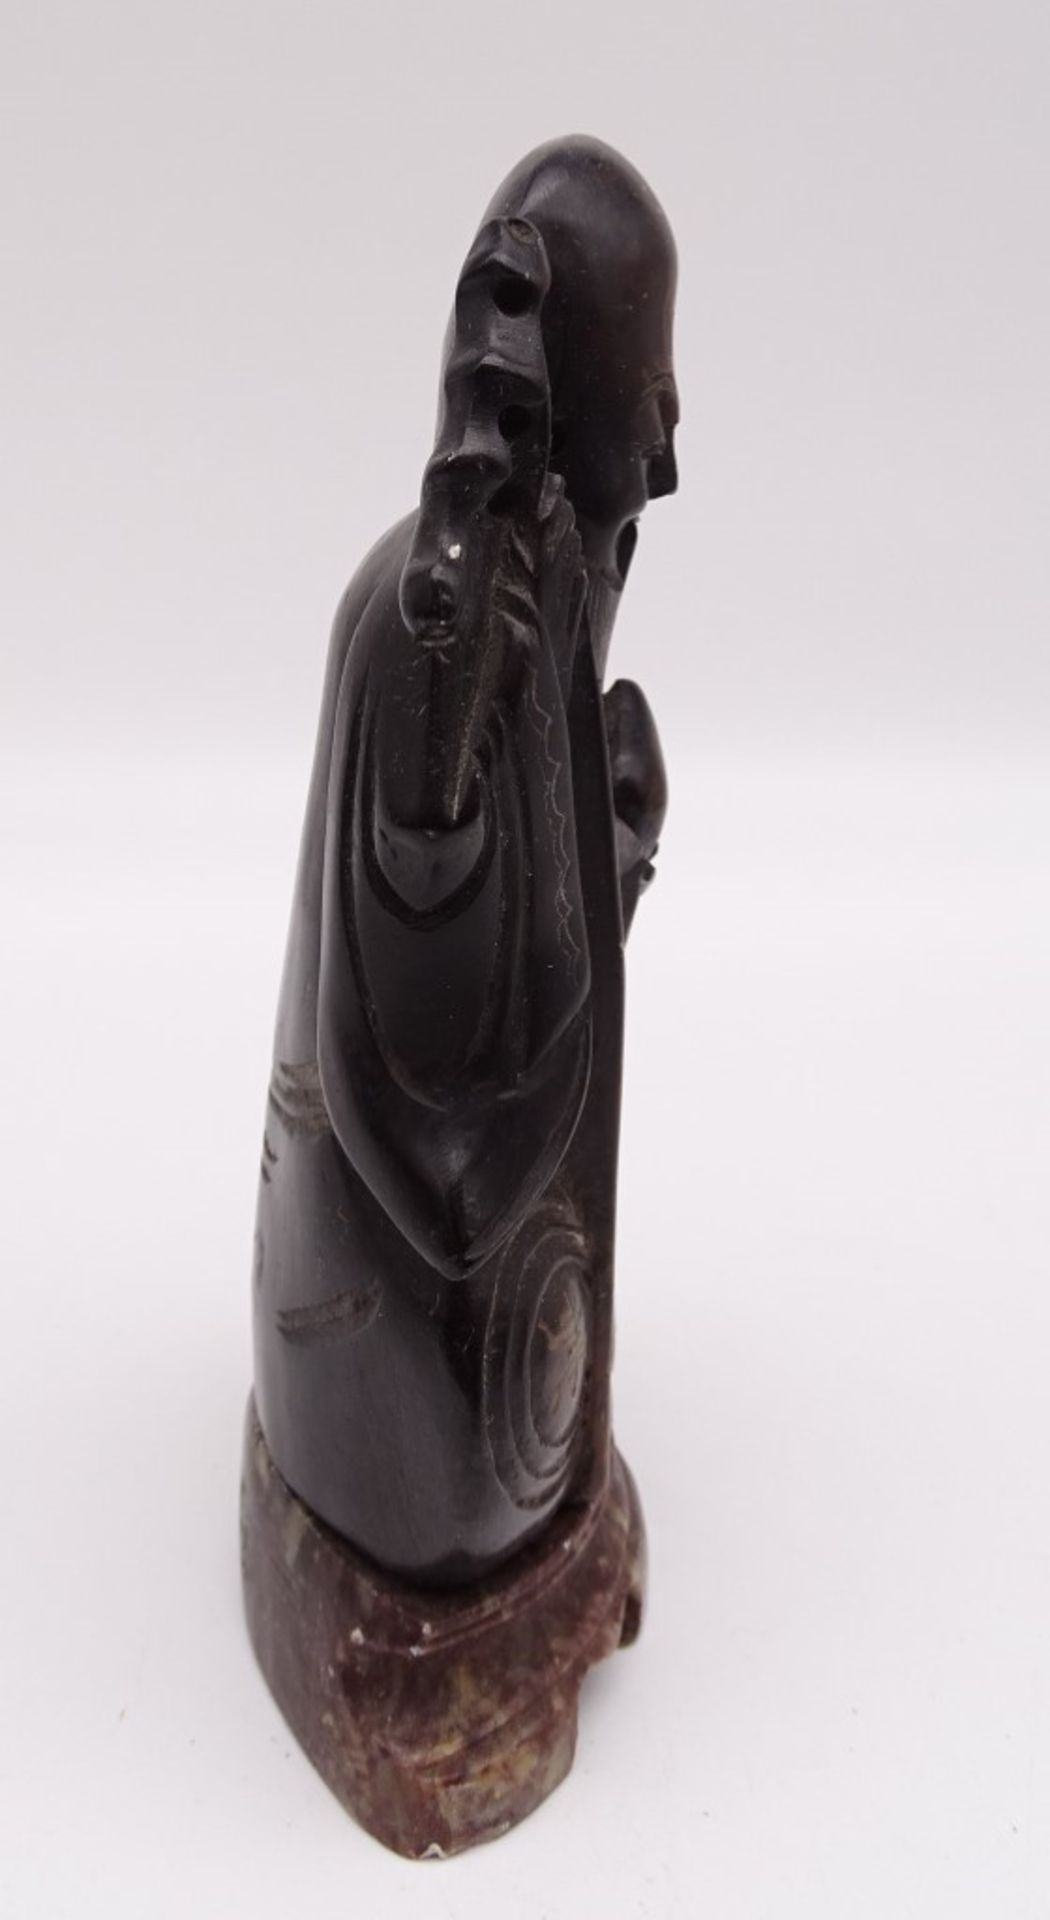 Mönchnfigur auf Steinsockel, geschnitzt, China, H. 17 cm - Bild 4 aus 8